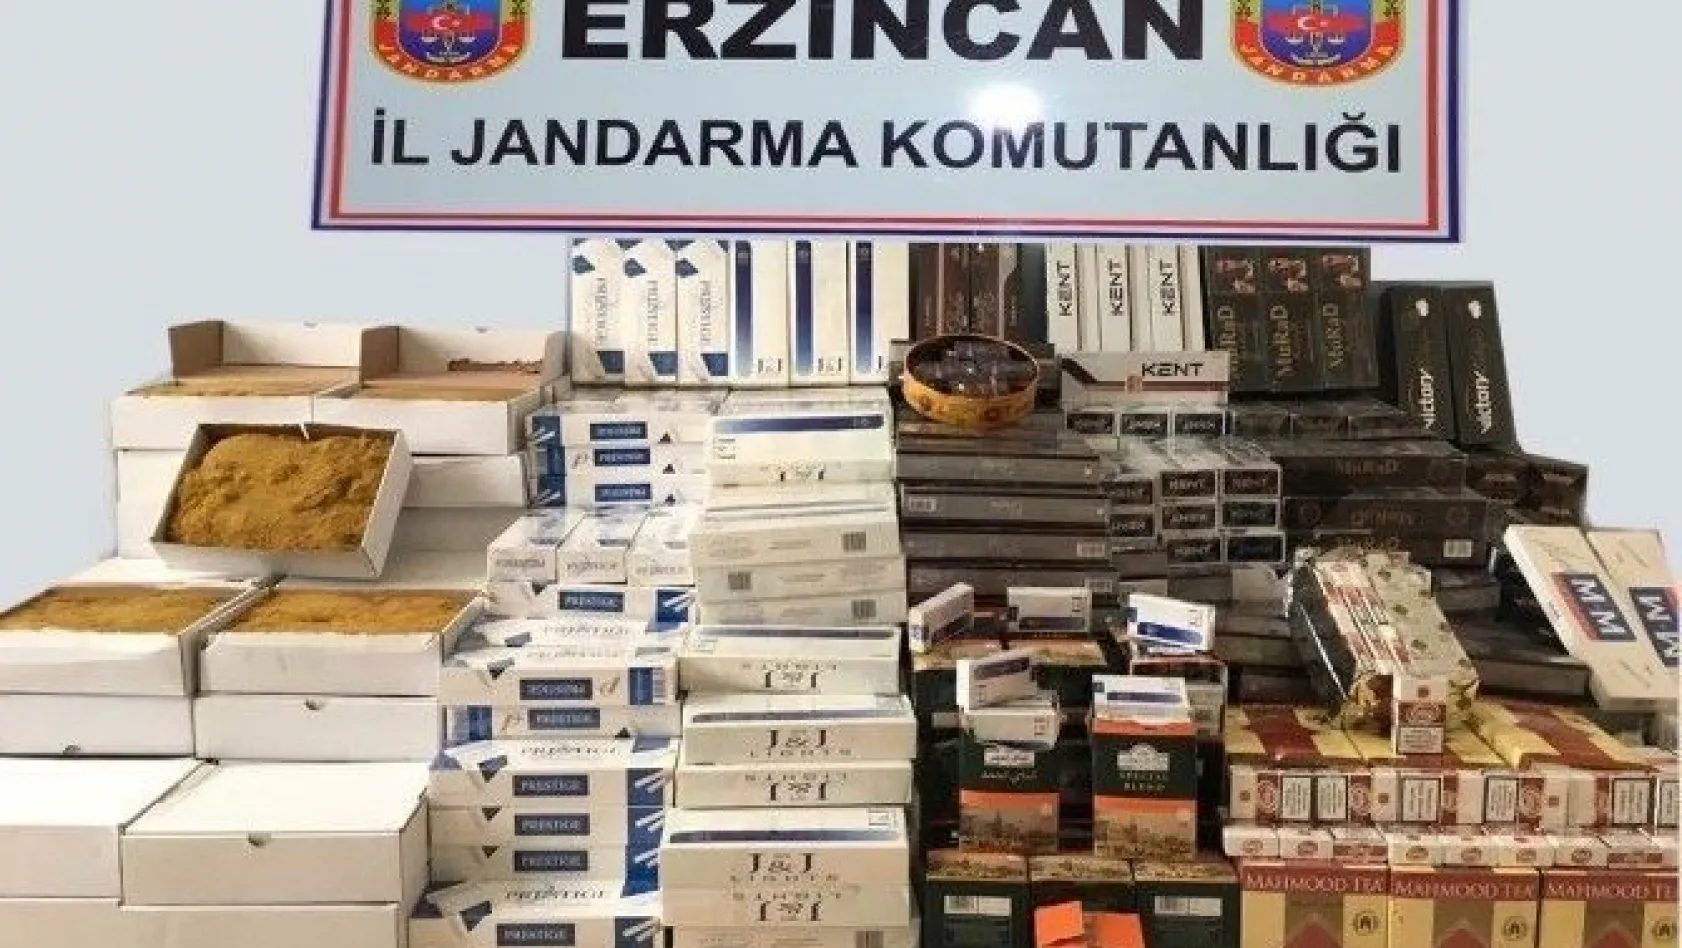 Erzincan da kaçakçılık operasyonu
